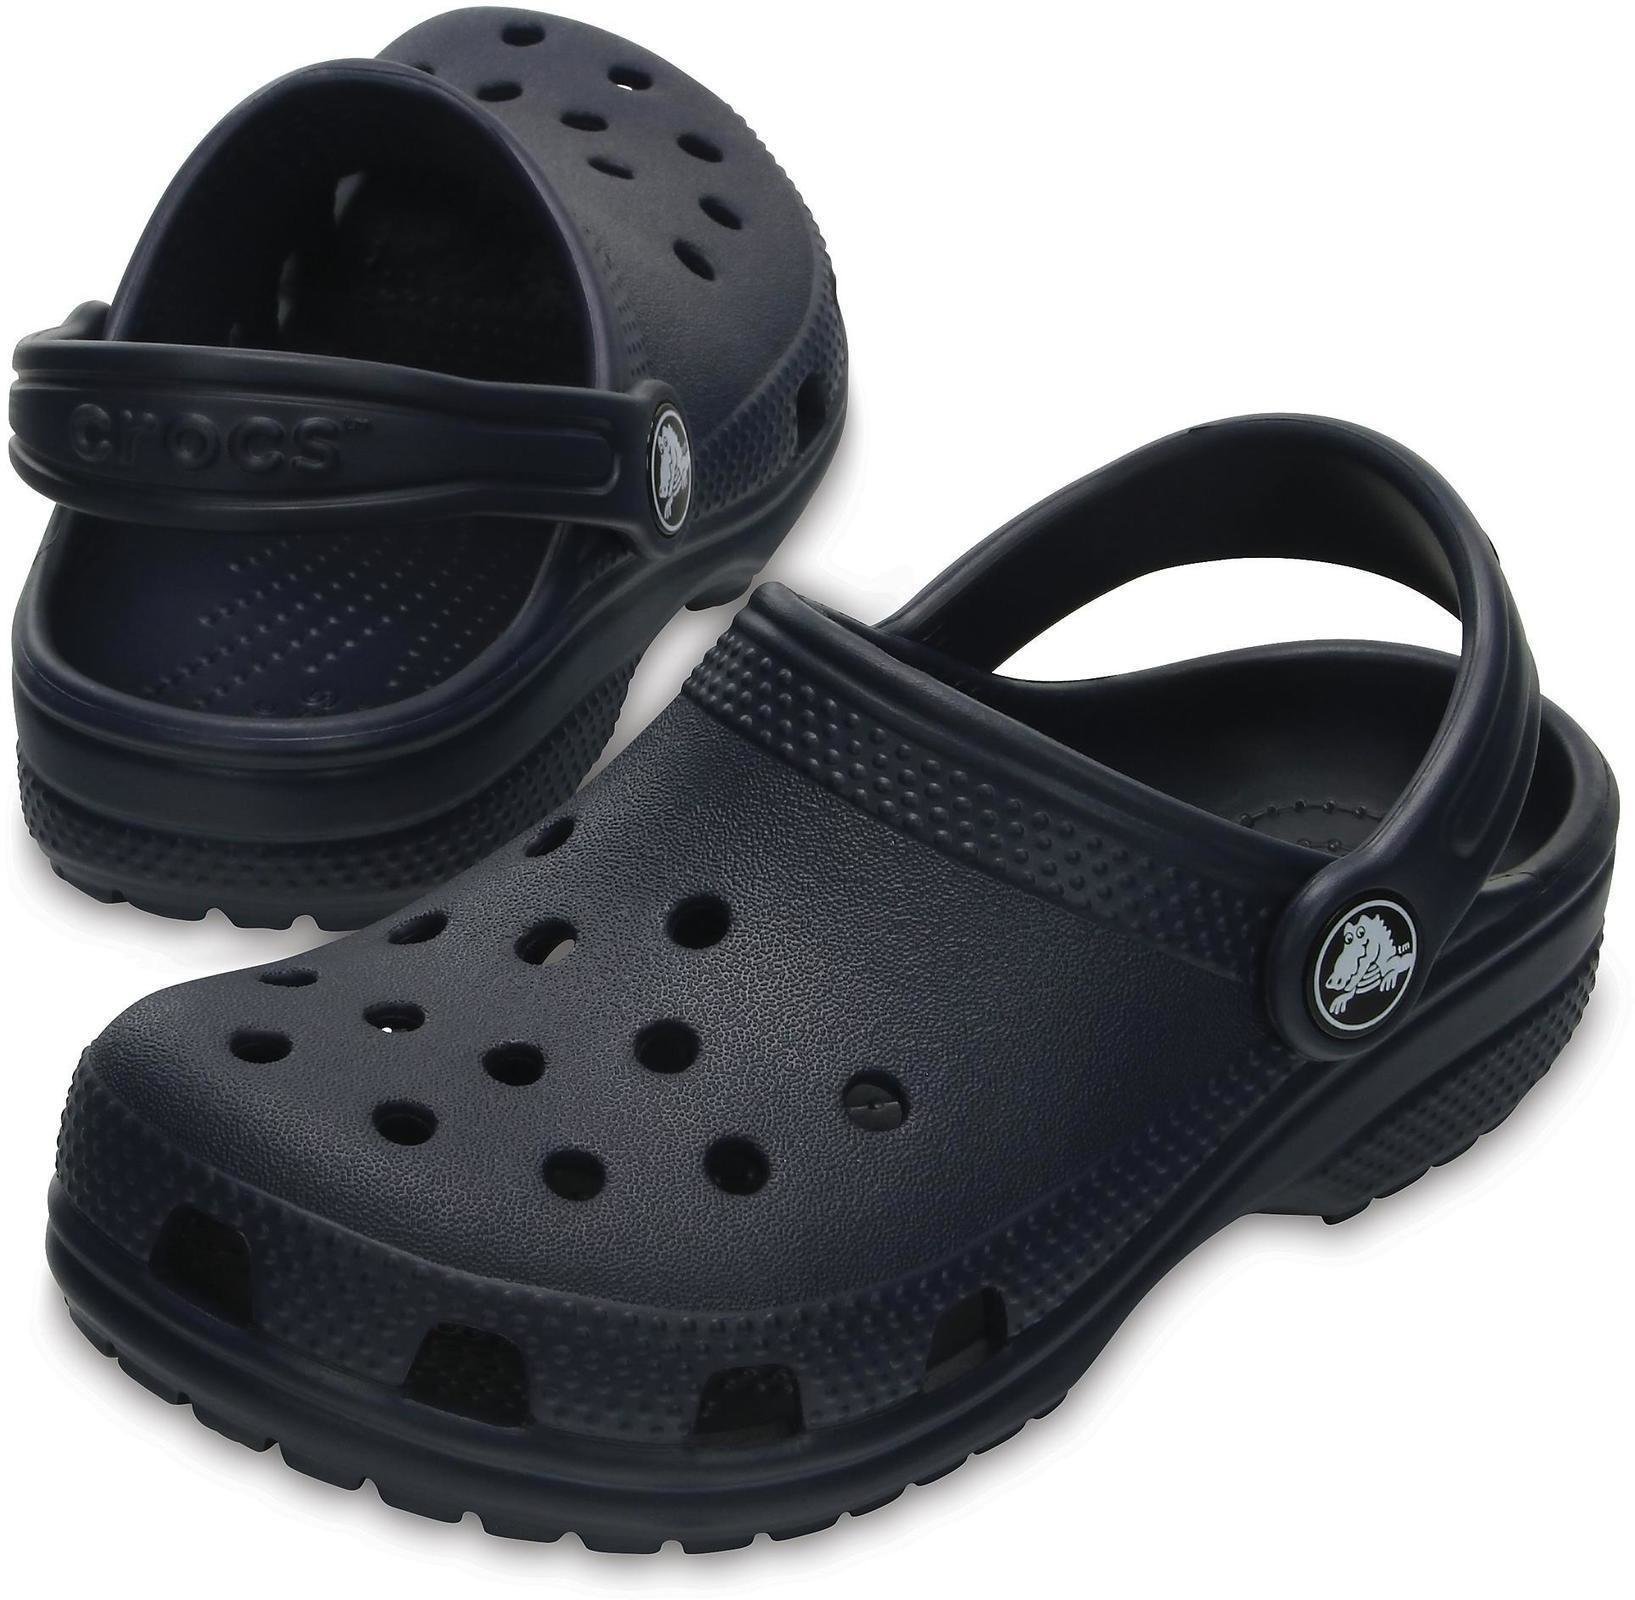 Dječje cipele za jedrenje Crocs Kids' Classic Clog Navy 34-35